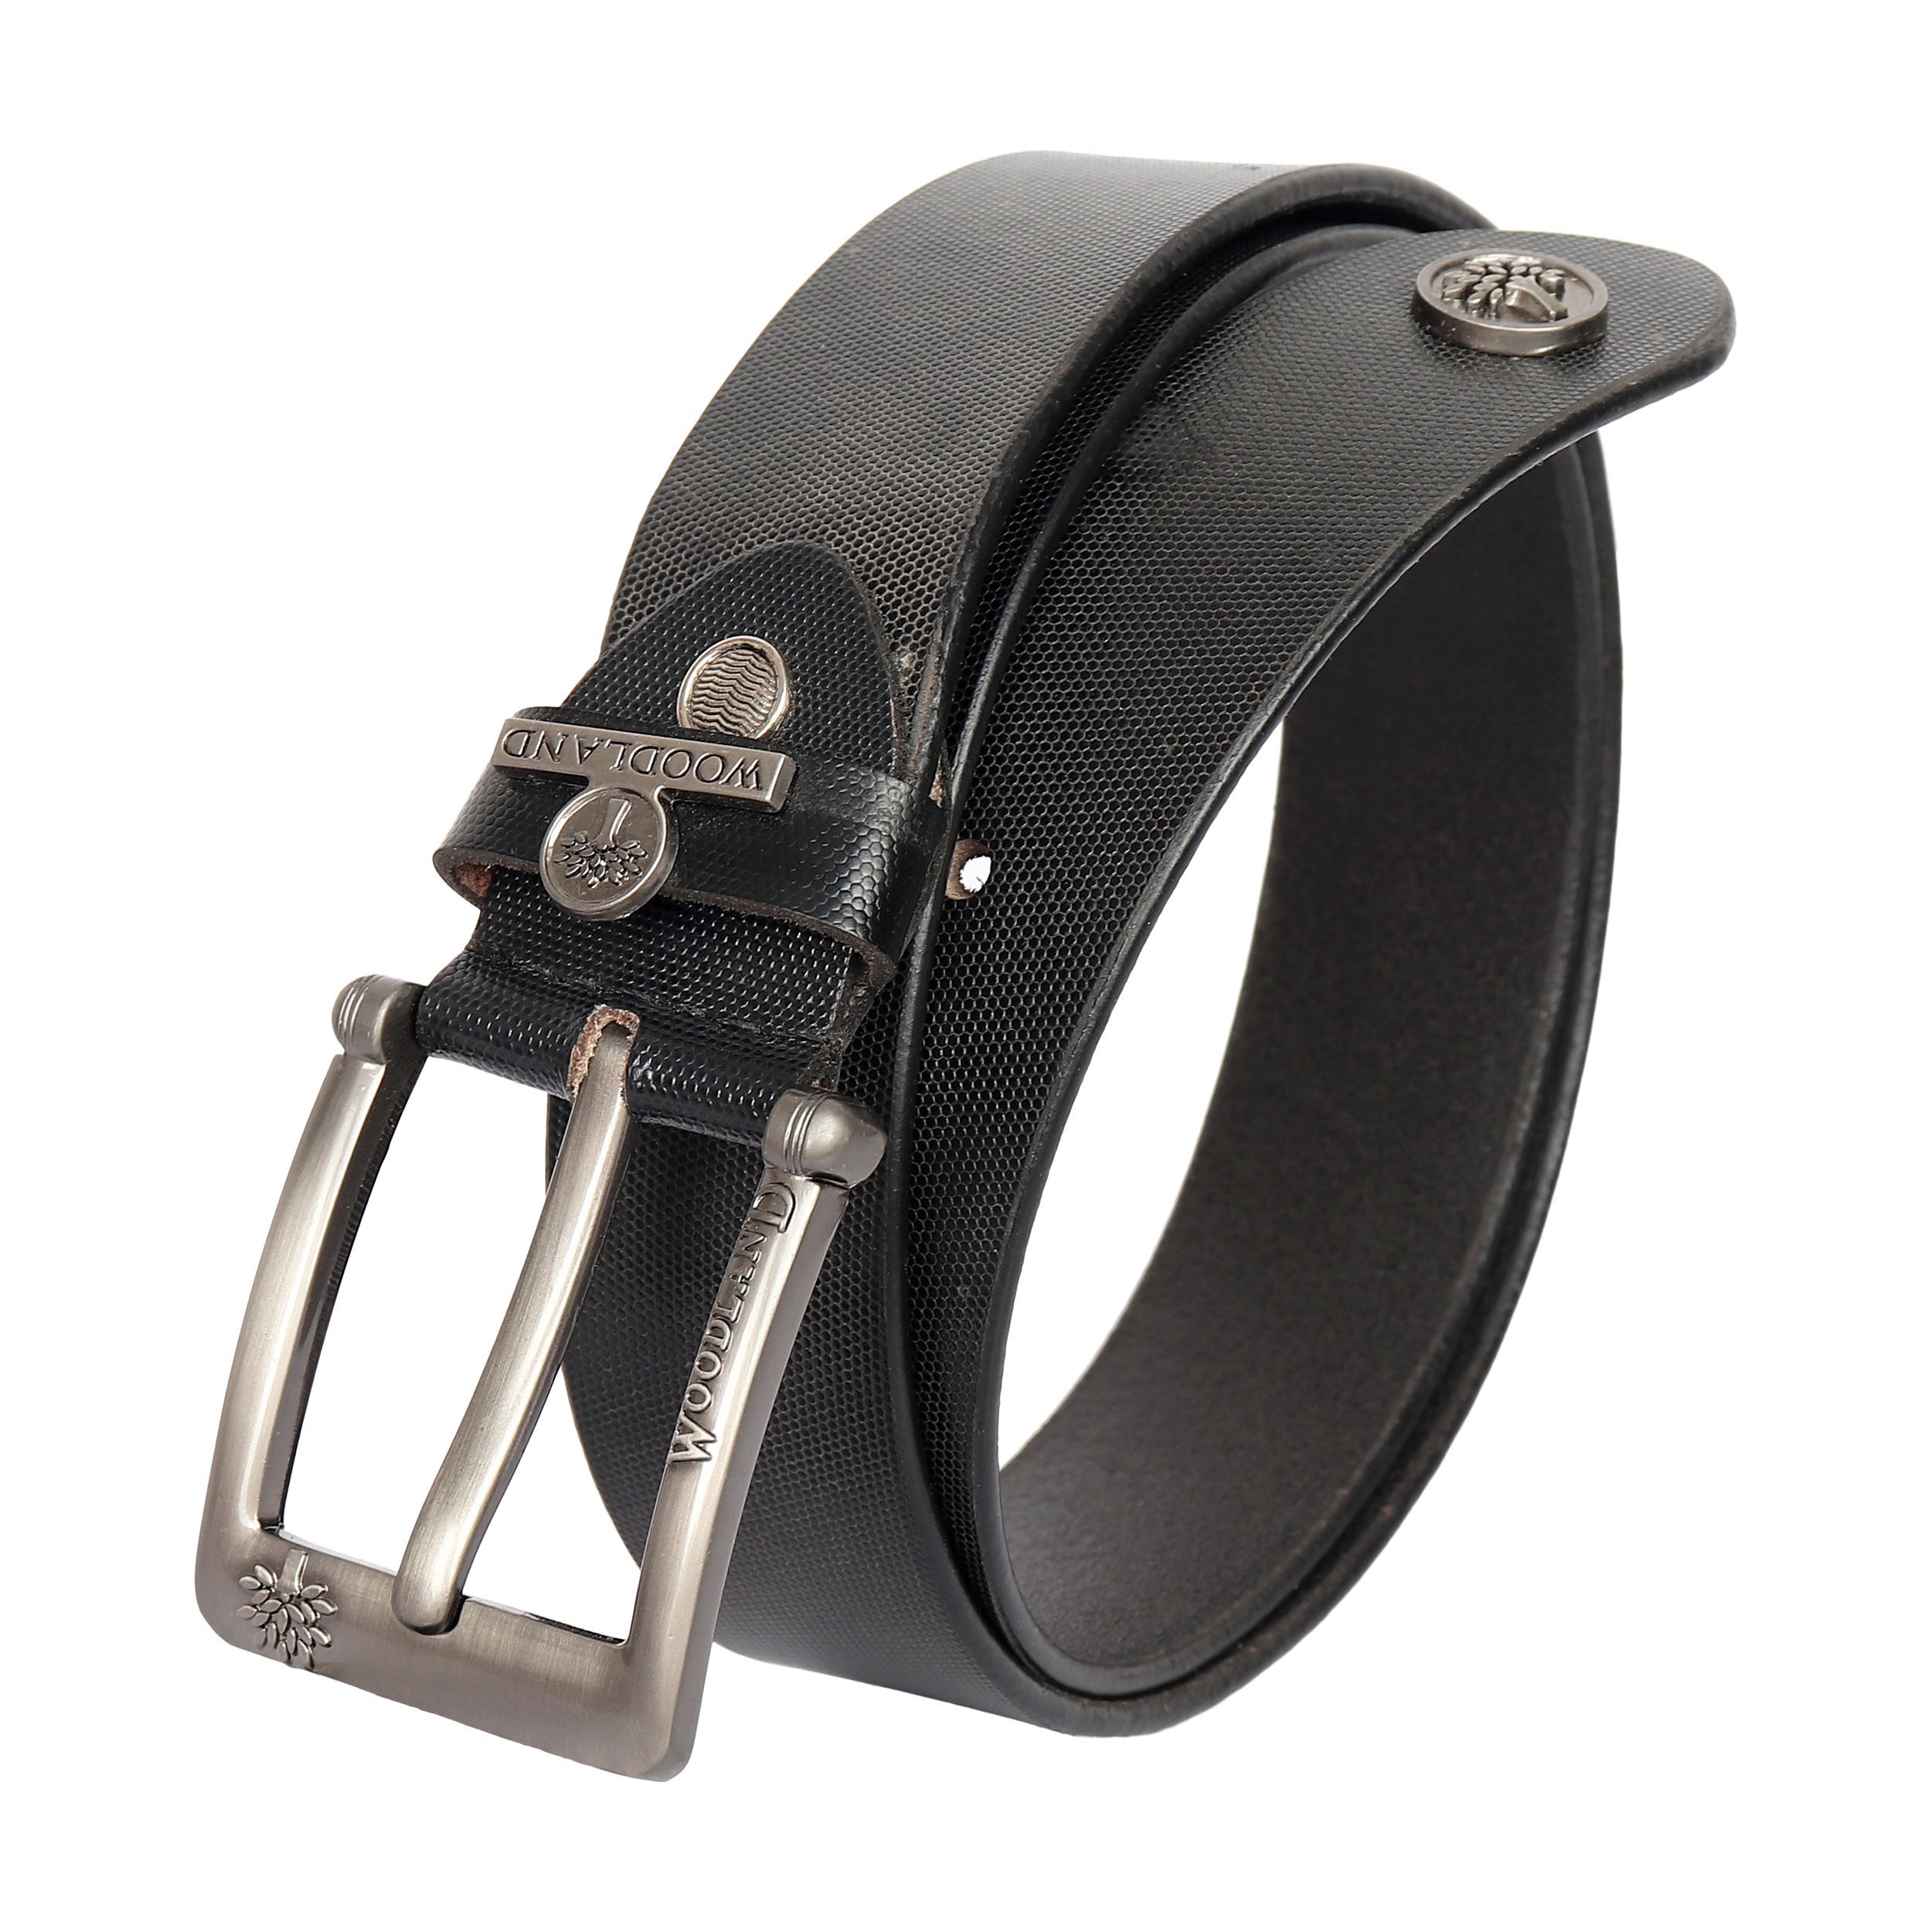 Woodland Clue Black Leather Formal Belt Buy Woodland Clue Black